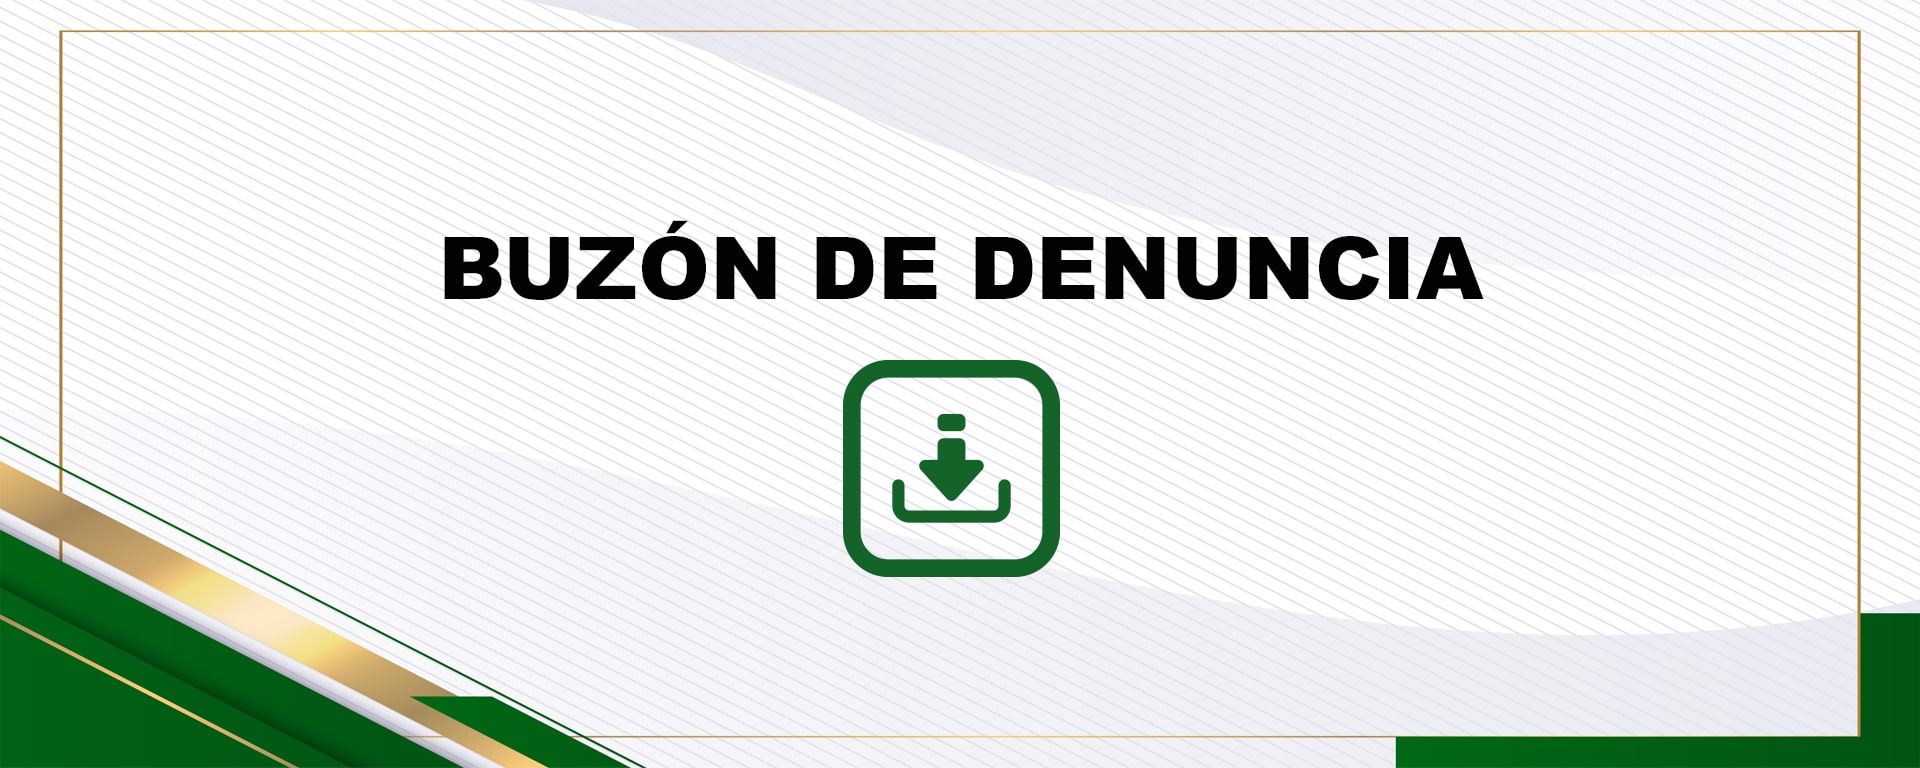 ZOOMBOX BUZON DE DENUNCIA-min